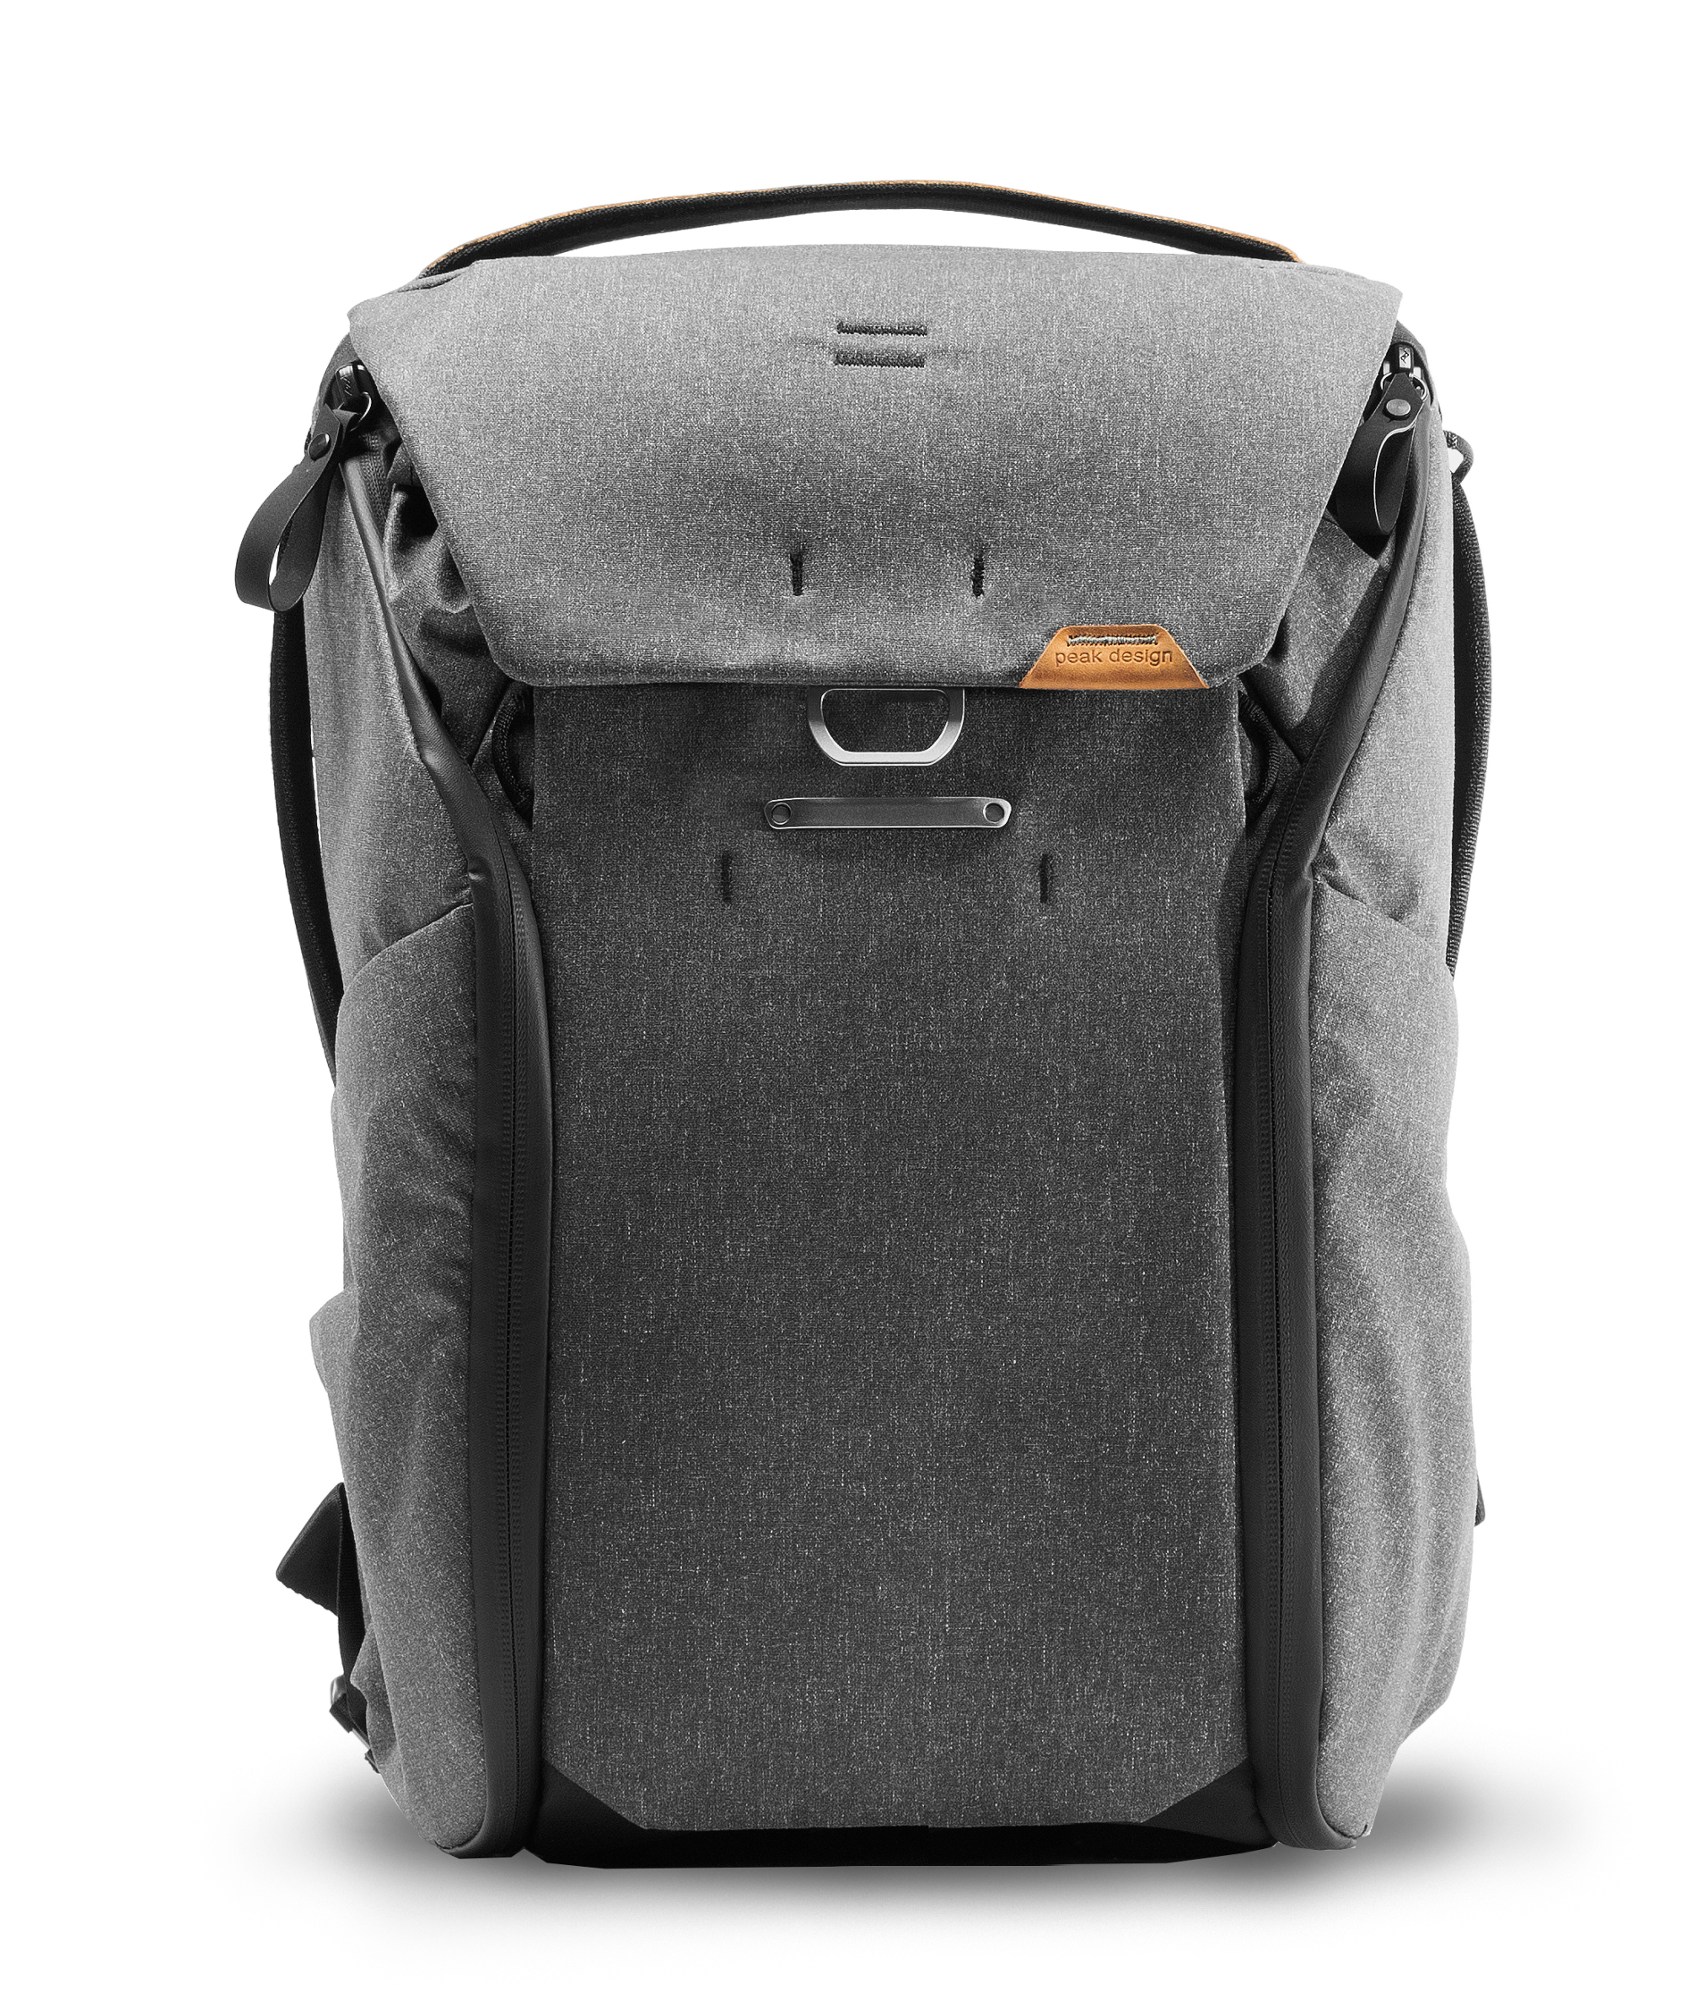 Рюкзак на каждый день V2 20л Peak Design, серый рюкзак peak design the everyday backpack 20l v2 0 ash